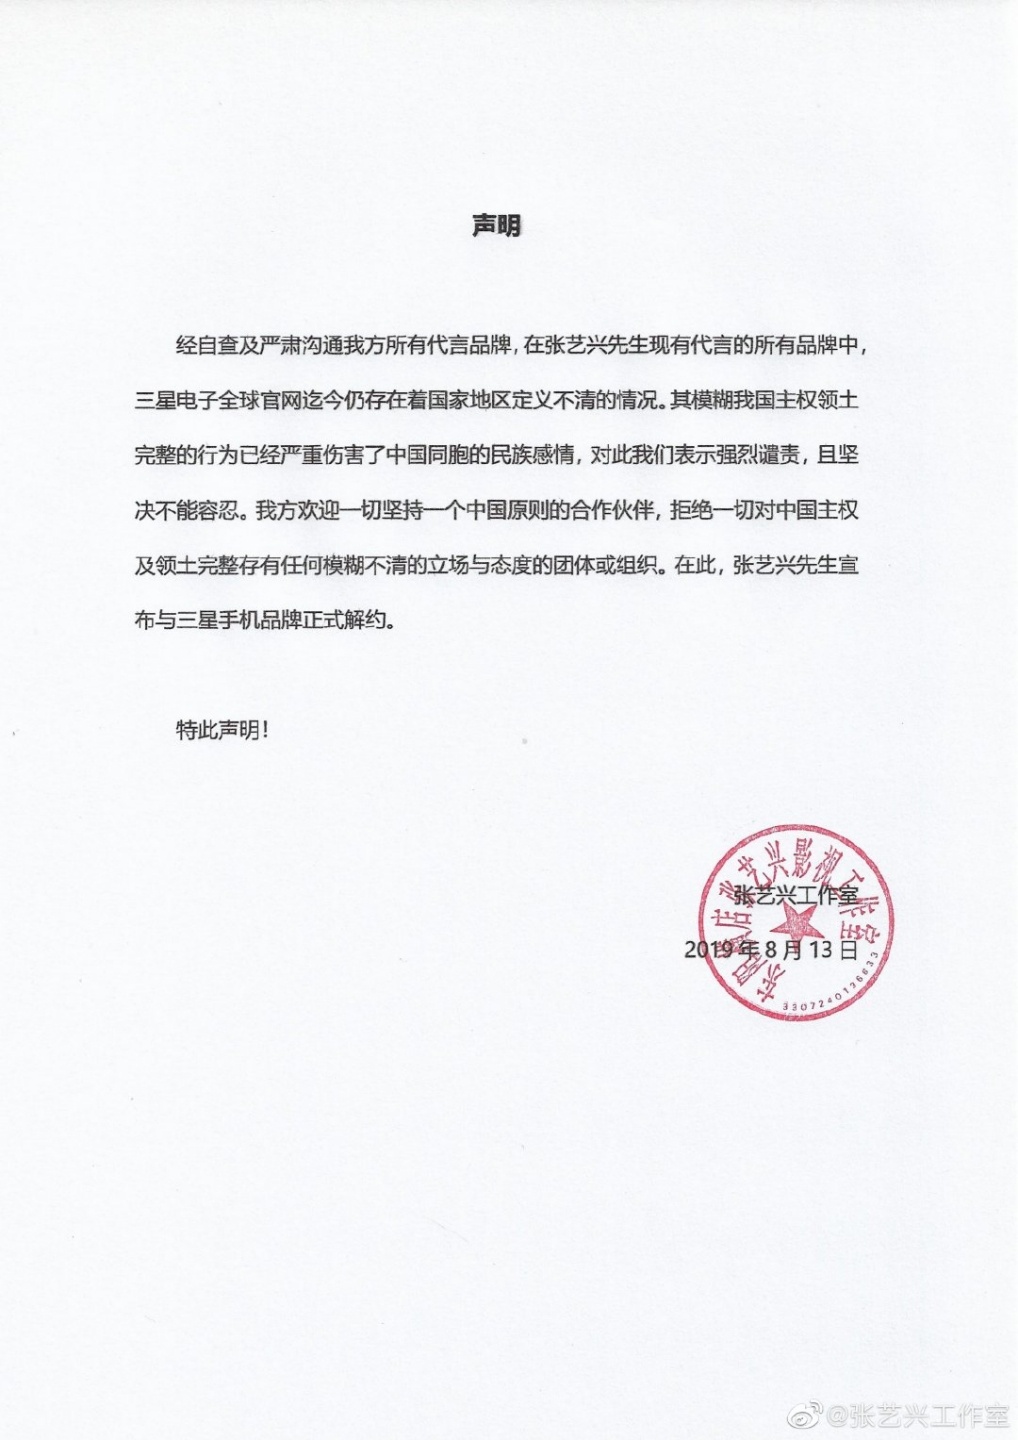 三星掃到颱風尾？EXO中國成員張藝興譴責『 模糊我國領土主權完整性 』 與三星解約